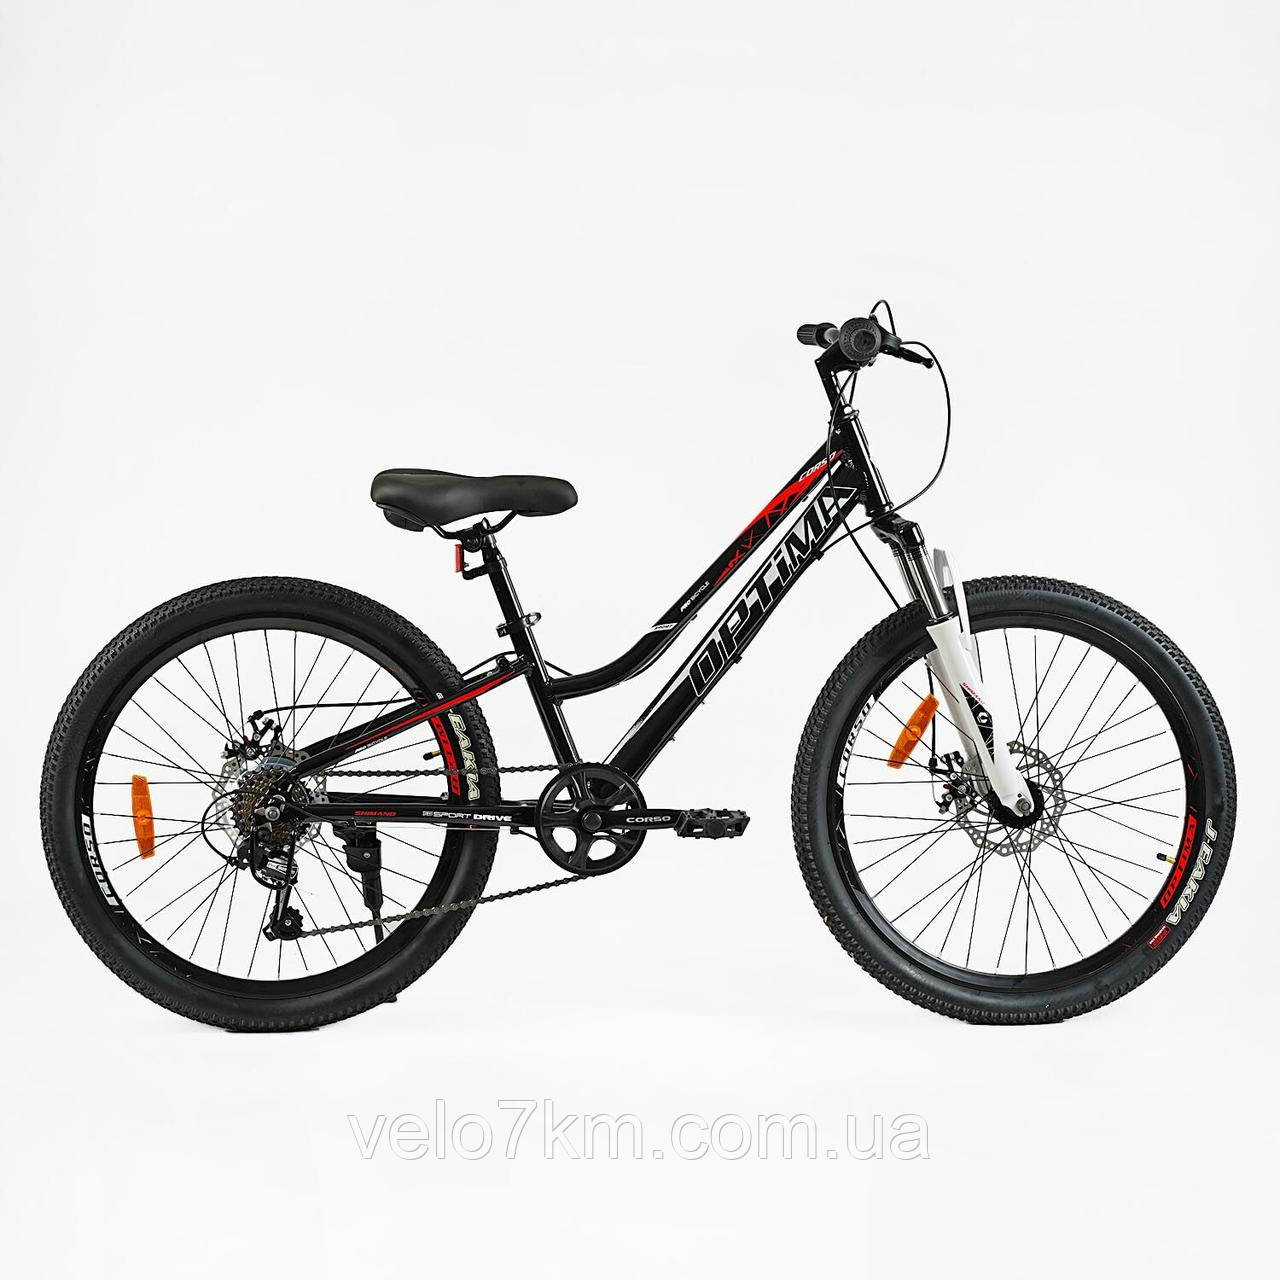 Підлітковий велосипед Corso Optima 24" рама 11" алюмінієвий, Shimano RevoShift 7S, зібраний на 75% у коробці